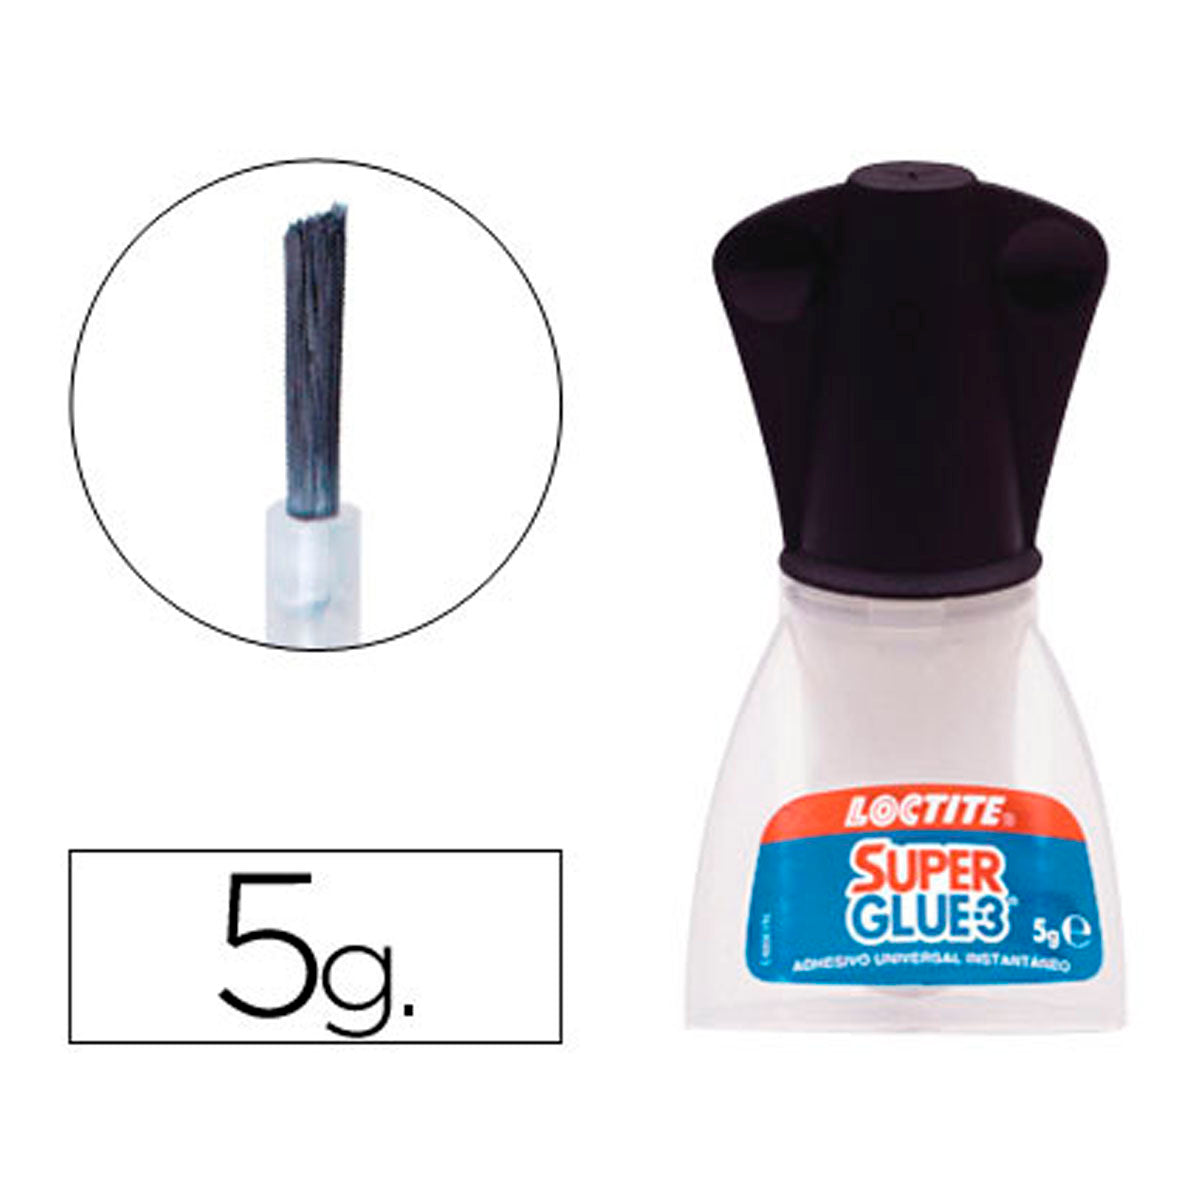 Super Glue-3 Cristal - Pegamento instantáneo 3 gr (Loctite